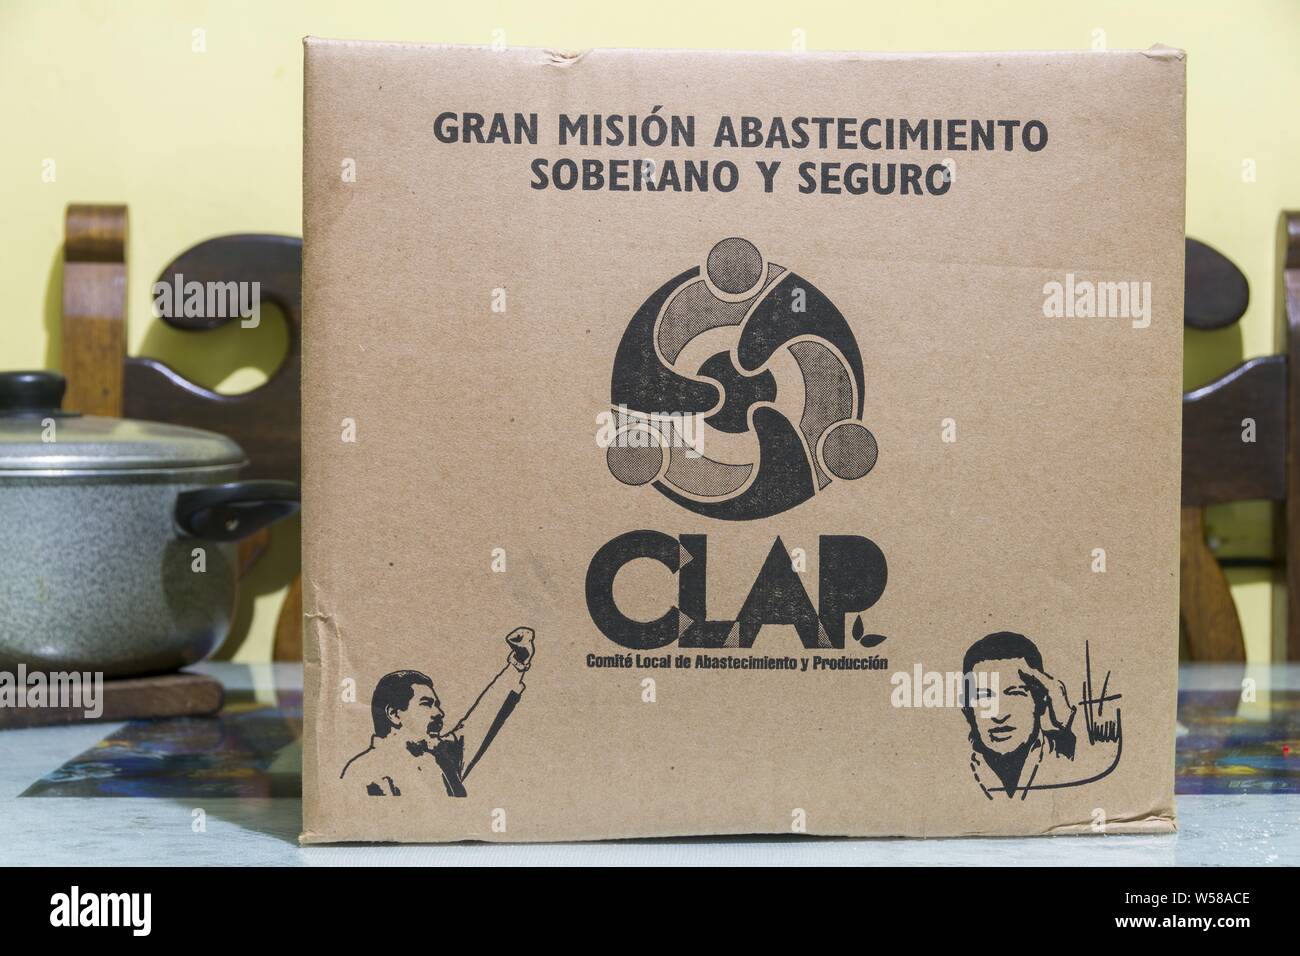 El 24 de julio de 2019, Caracas, Distrito Capital, Venezuela: Caja de  alimentos básicos, también comúnmente llamados Caja Clap. (Gran Misión de  abastecimiento seguro y soberano) abreviaturas.(CLAP) provienen de: los  comités locales